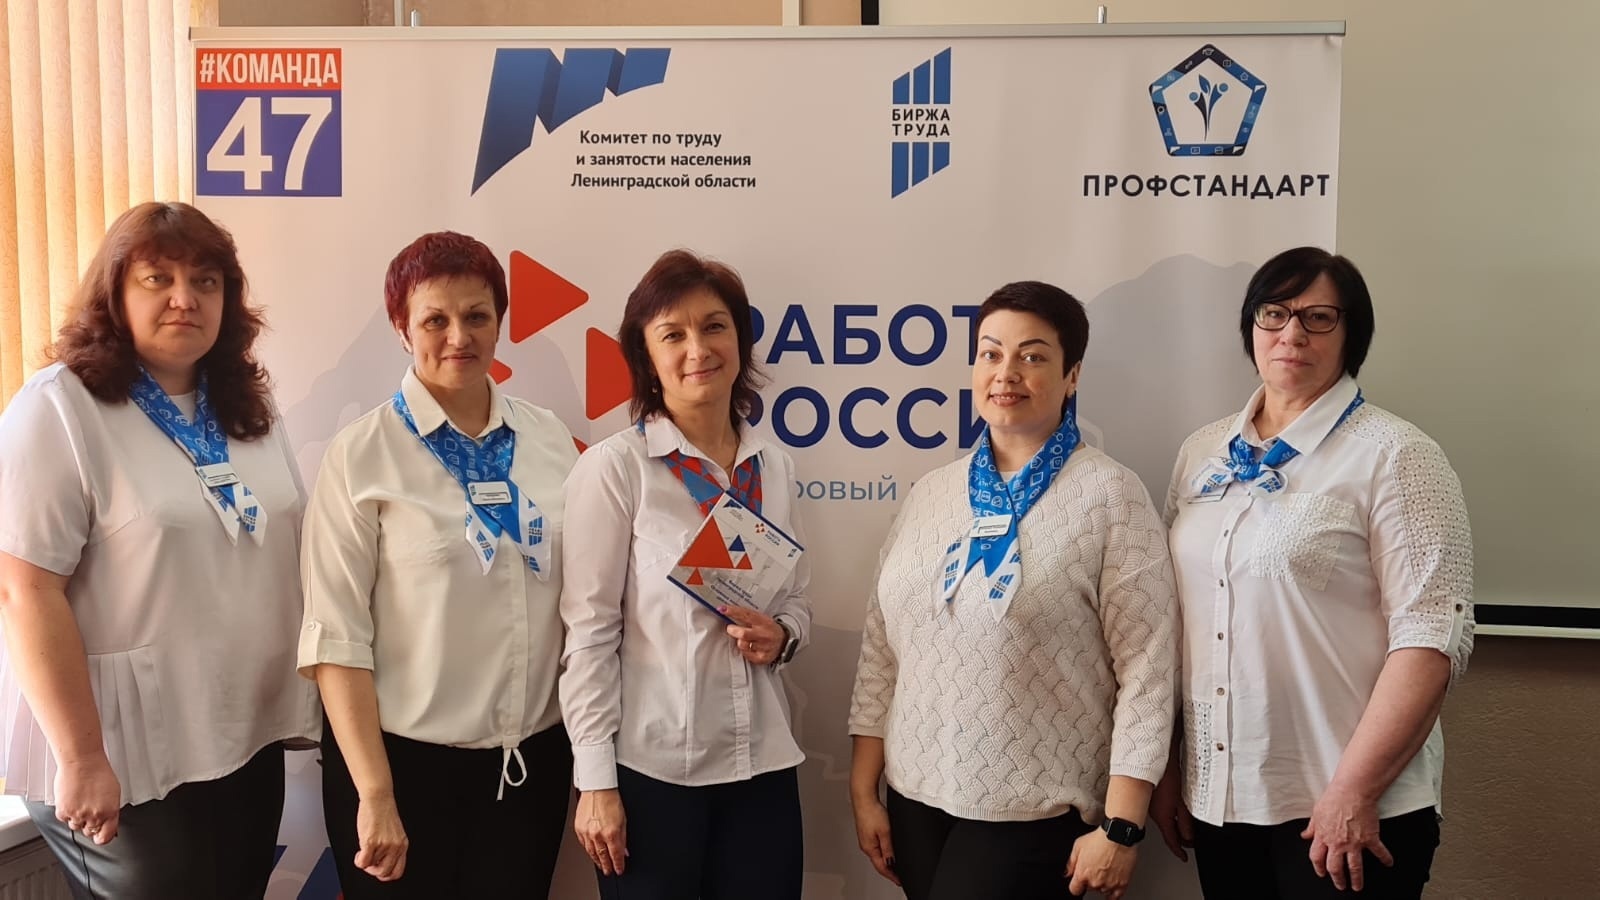 Работа в греции за 2019 год для русских, украинцев, казахстанцев и белорусов